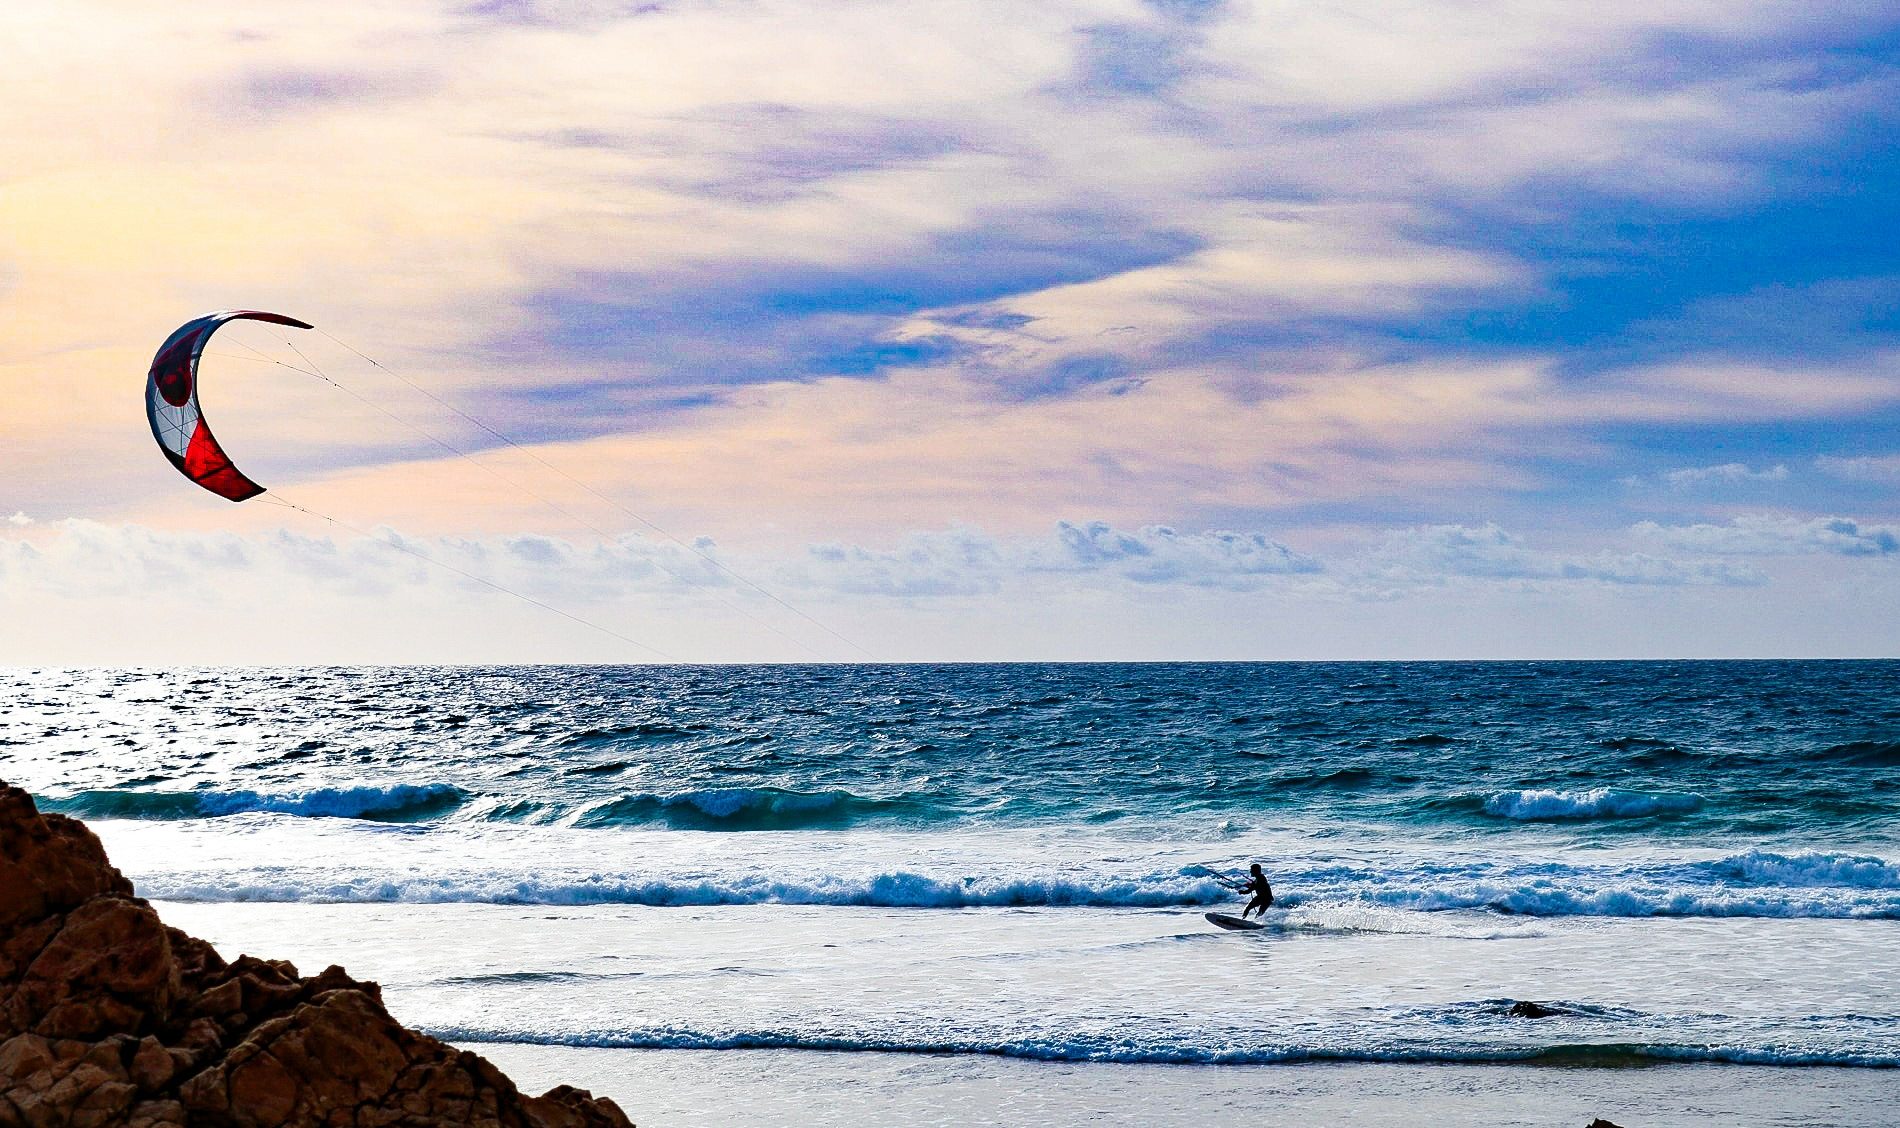 Wave is the Algarve. By João Coelho